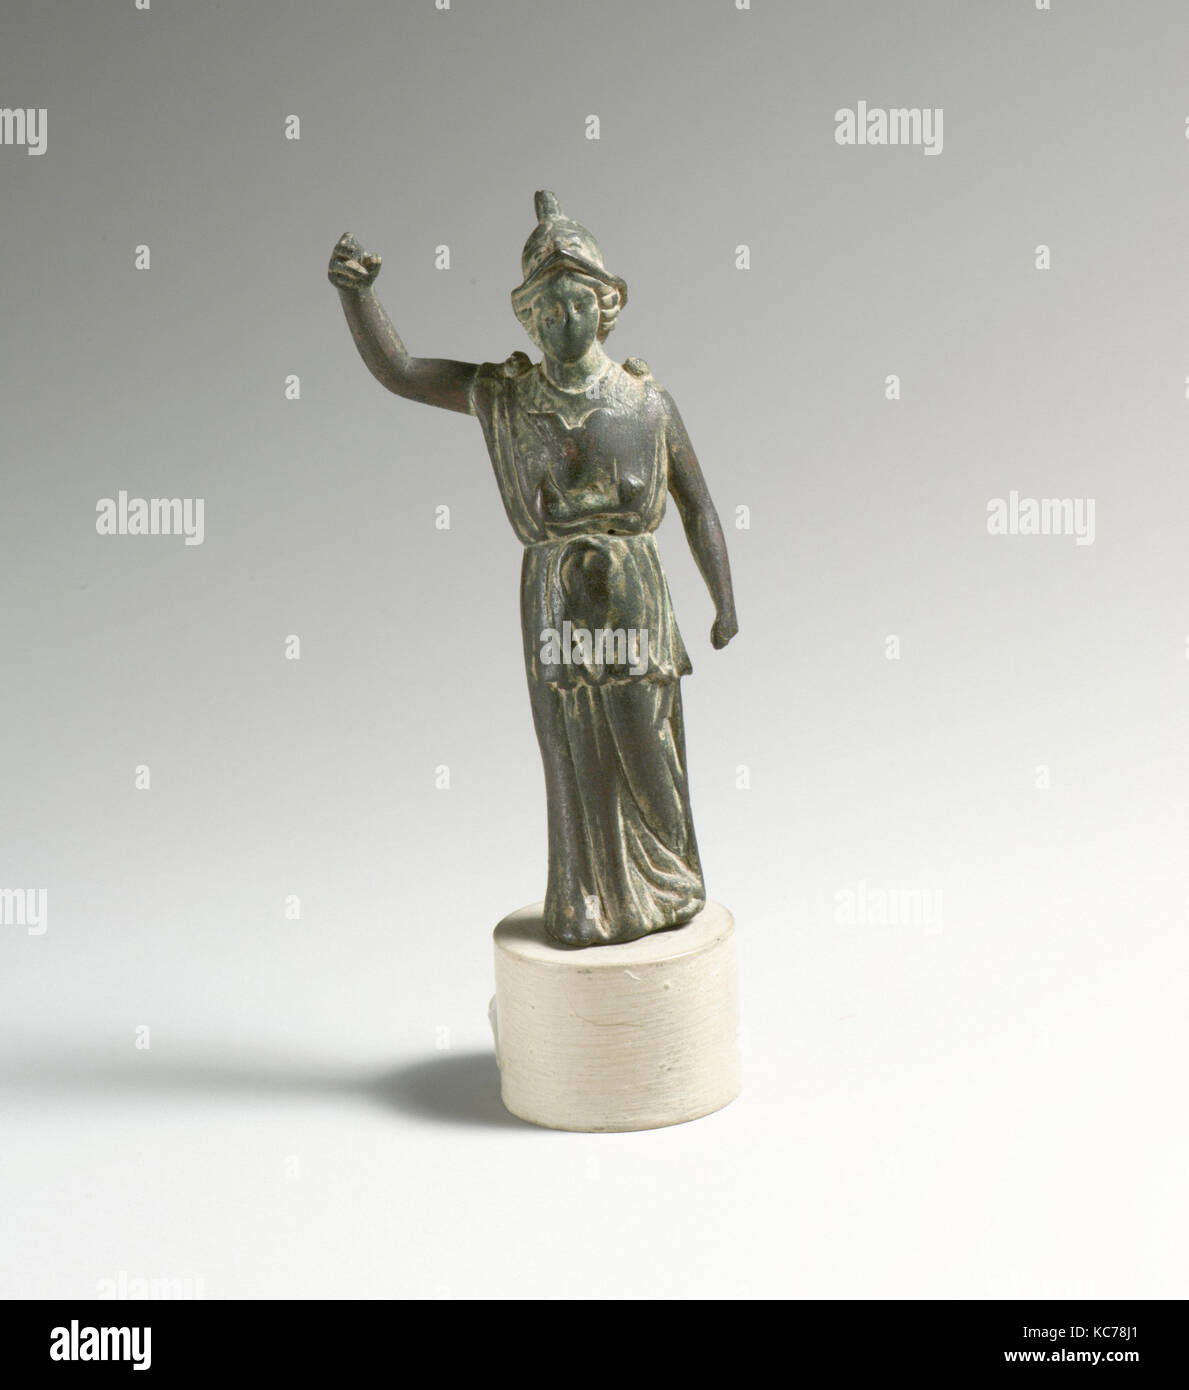 Griechische Göttin Bronze Statue Frau in Tücher gehüllt Hände am Kopf 